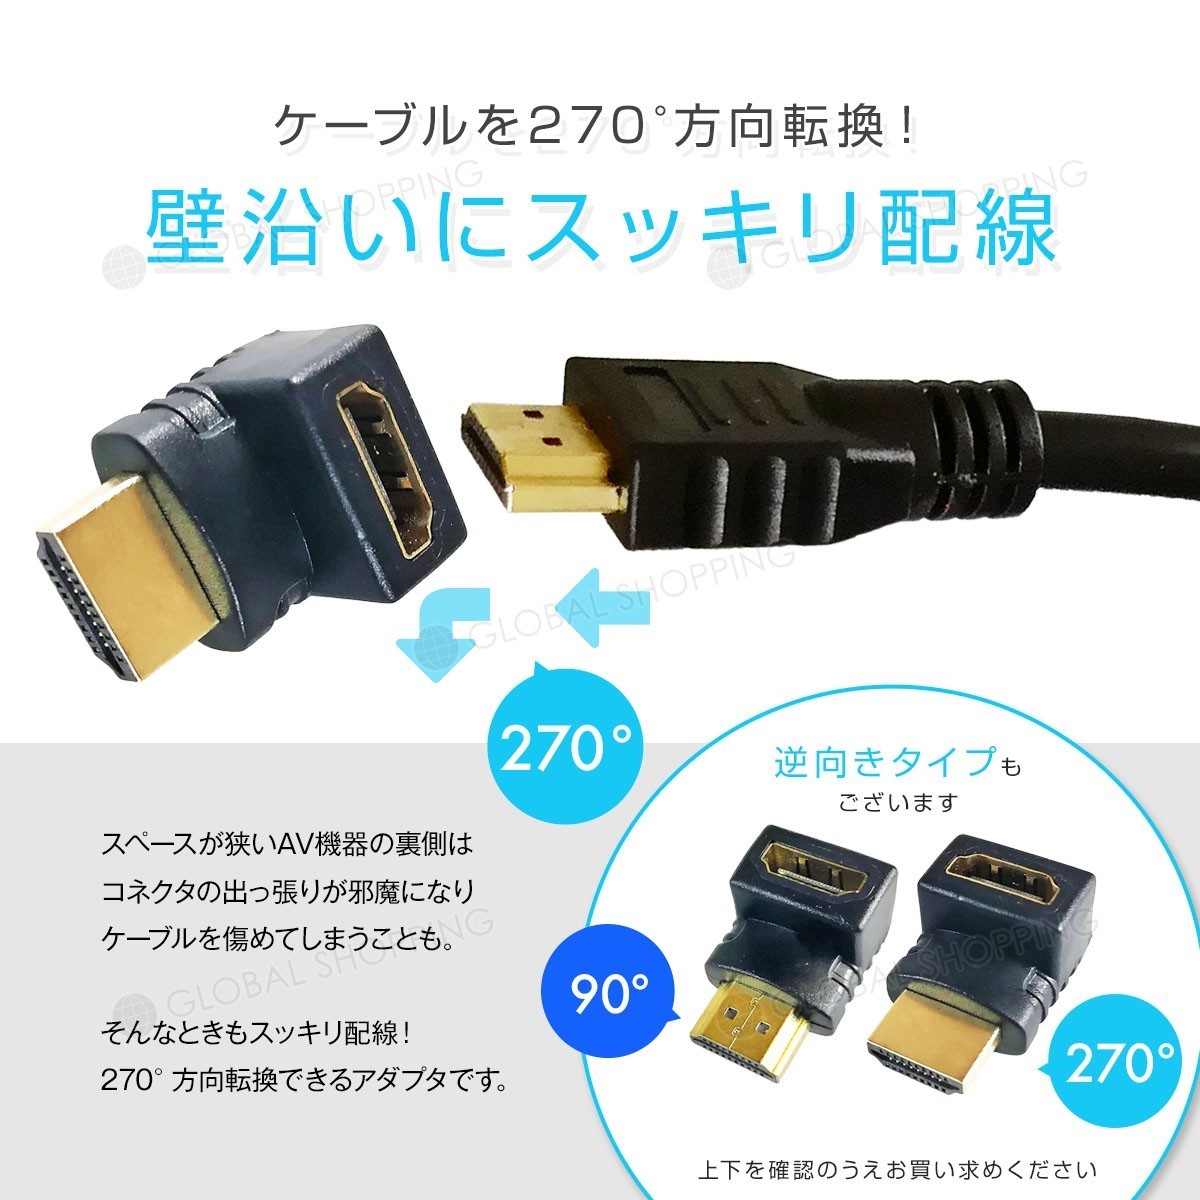 HDMI延長用アダプター 270度 上向き HDMI 変換アダプタ 角度調整 L型アダプタ L字コネクタ 変換コネクタ 向き テレビ PC モニター コネクタ_画像2